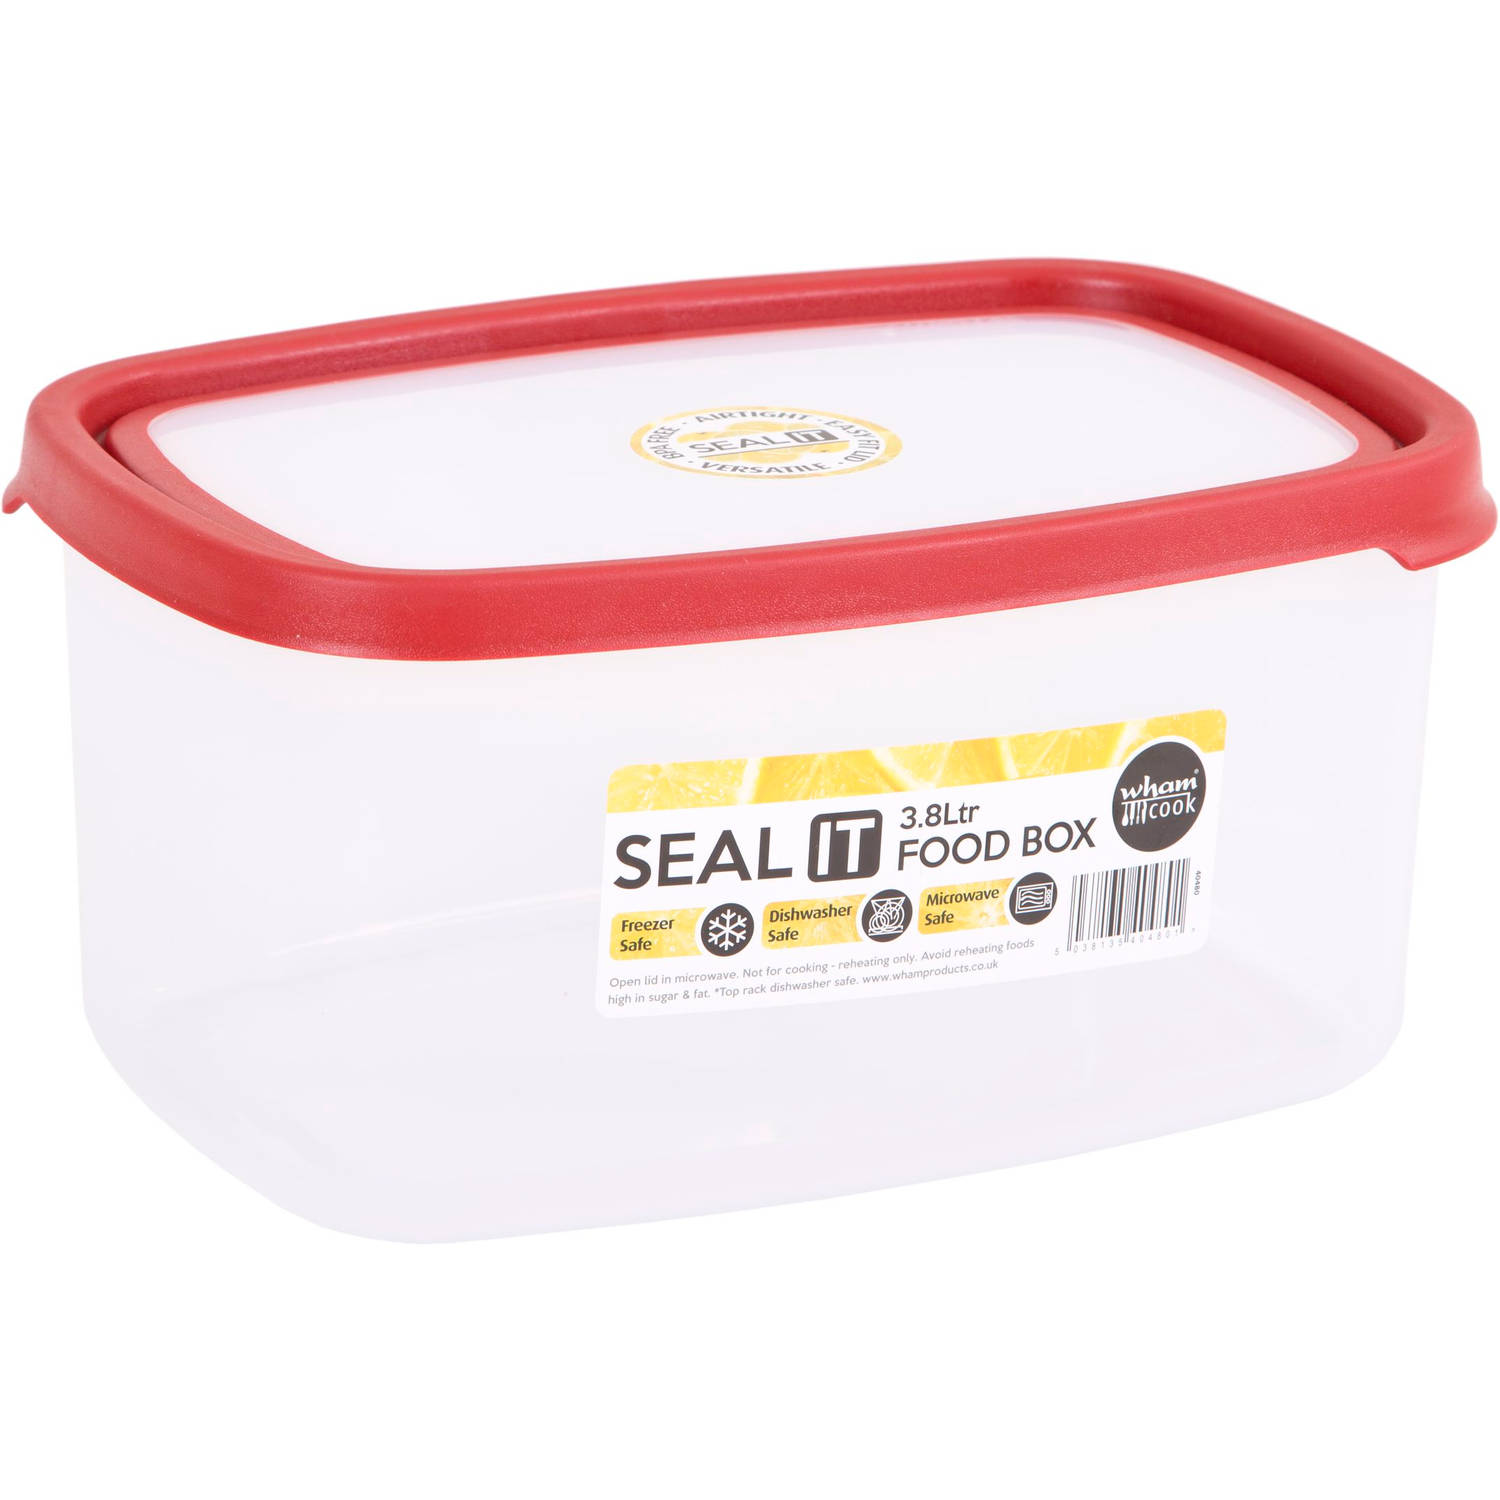 Wham - Opbergbox Seal It 3,8 liter Set van 2 Stuks - Polypropyleen - Transparant